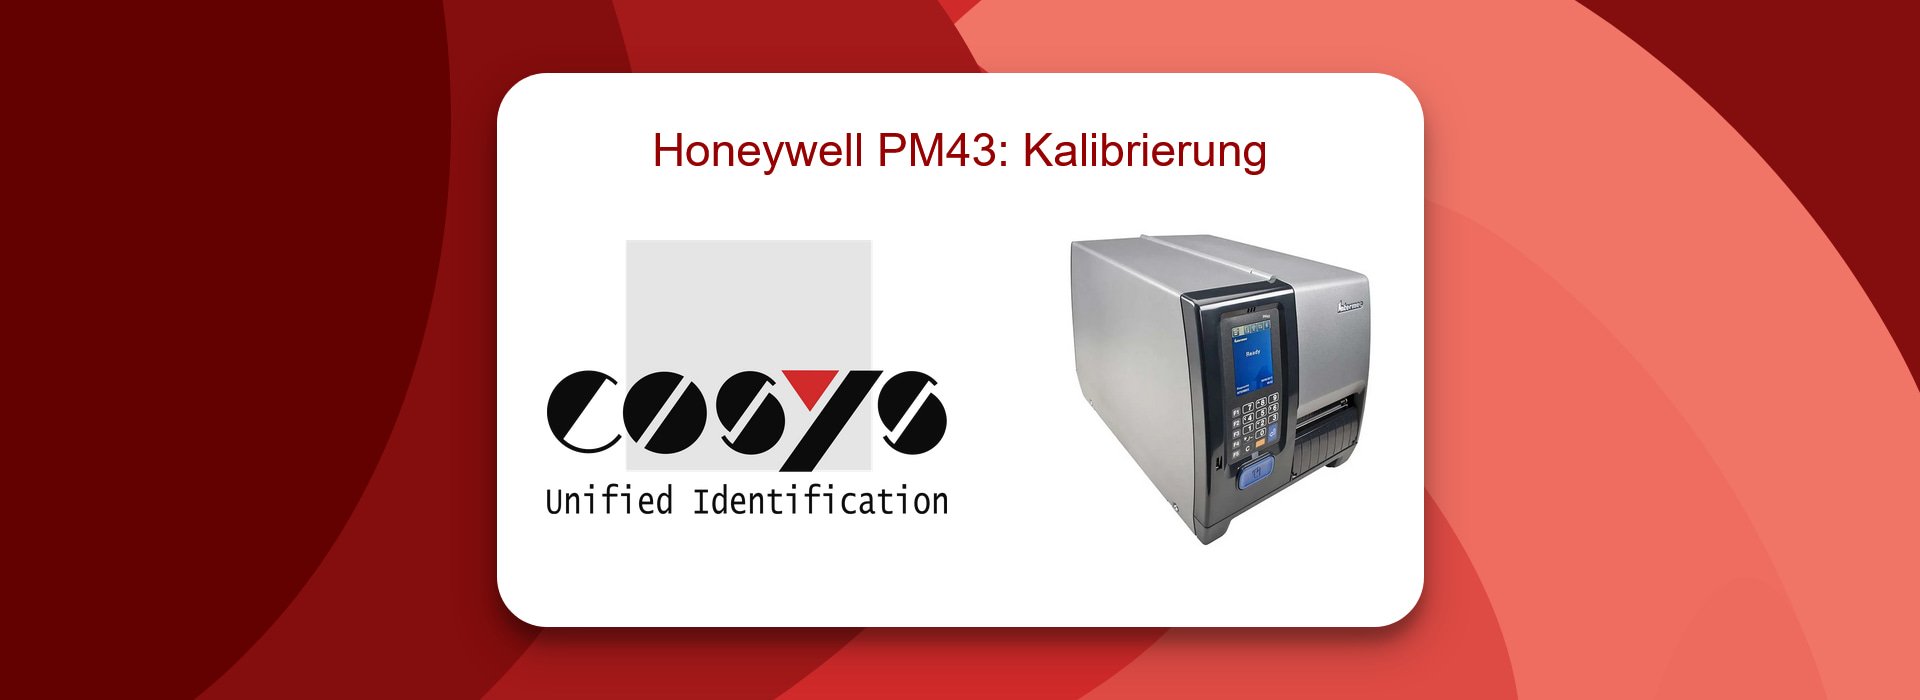 Kalibrierung des Honeywell PM43 Drucker